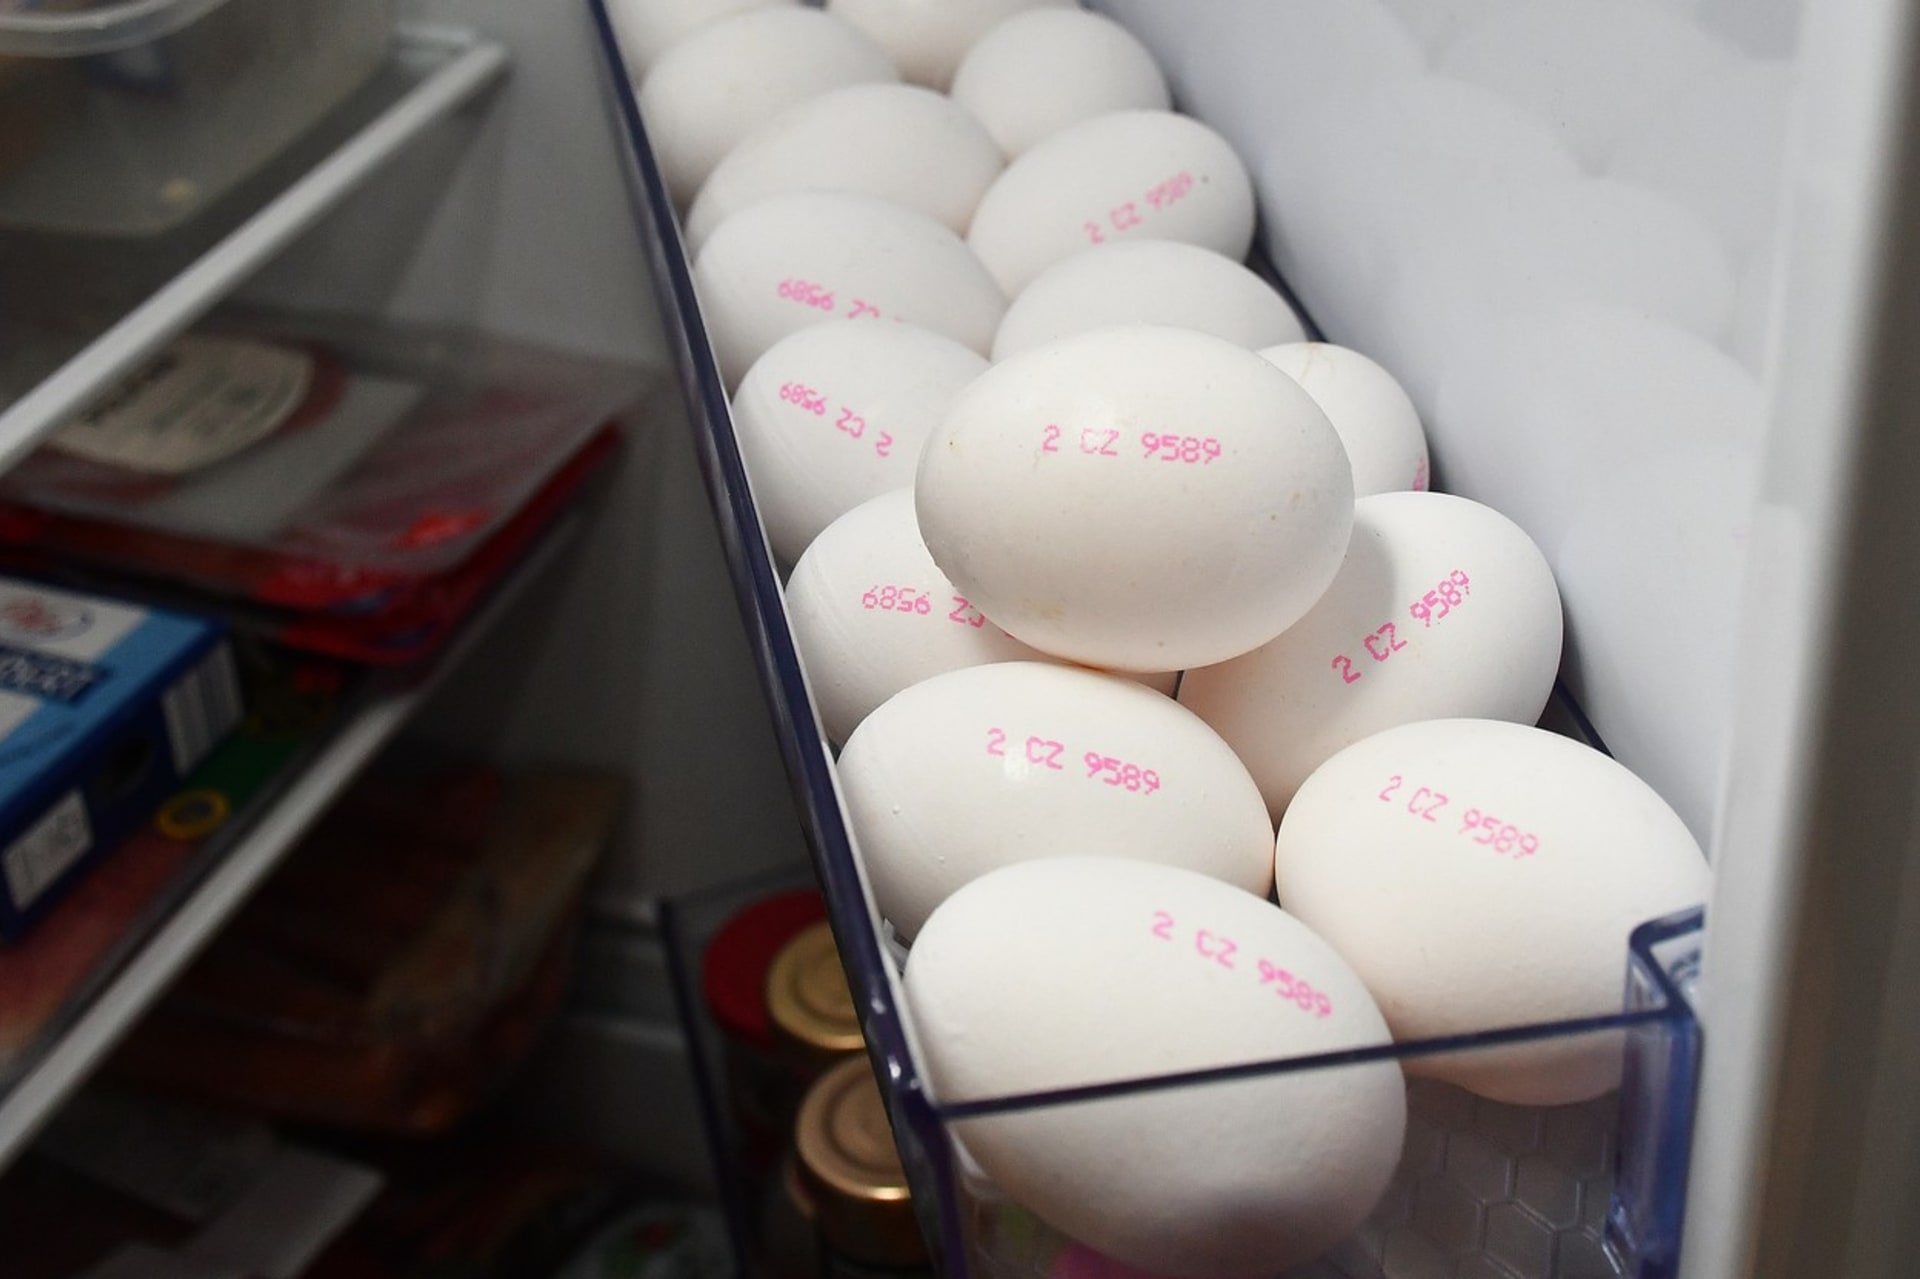 Češi se musí připravit na další zdražování vajec. Důvodem je ptačí chřipka, která nutí veterináře vybíjet i velké chovy. Vejce přitom zdražují neustále už od začátku loňského roku. 